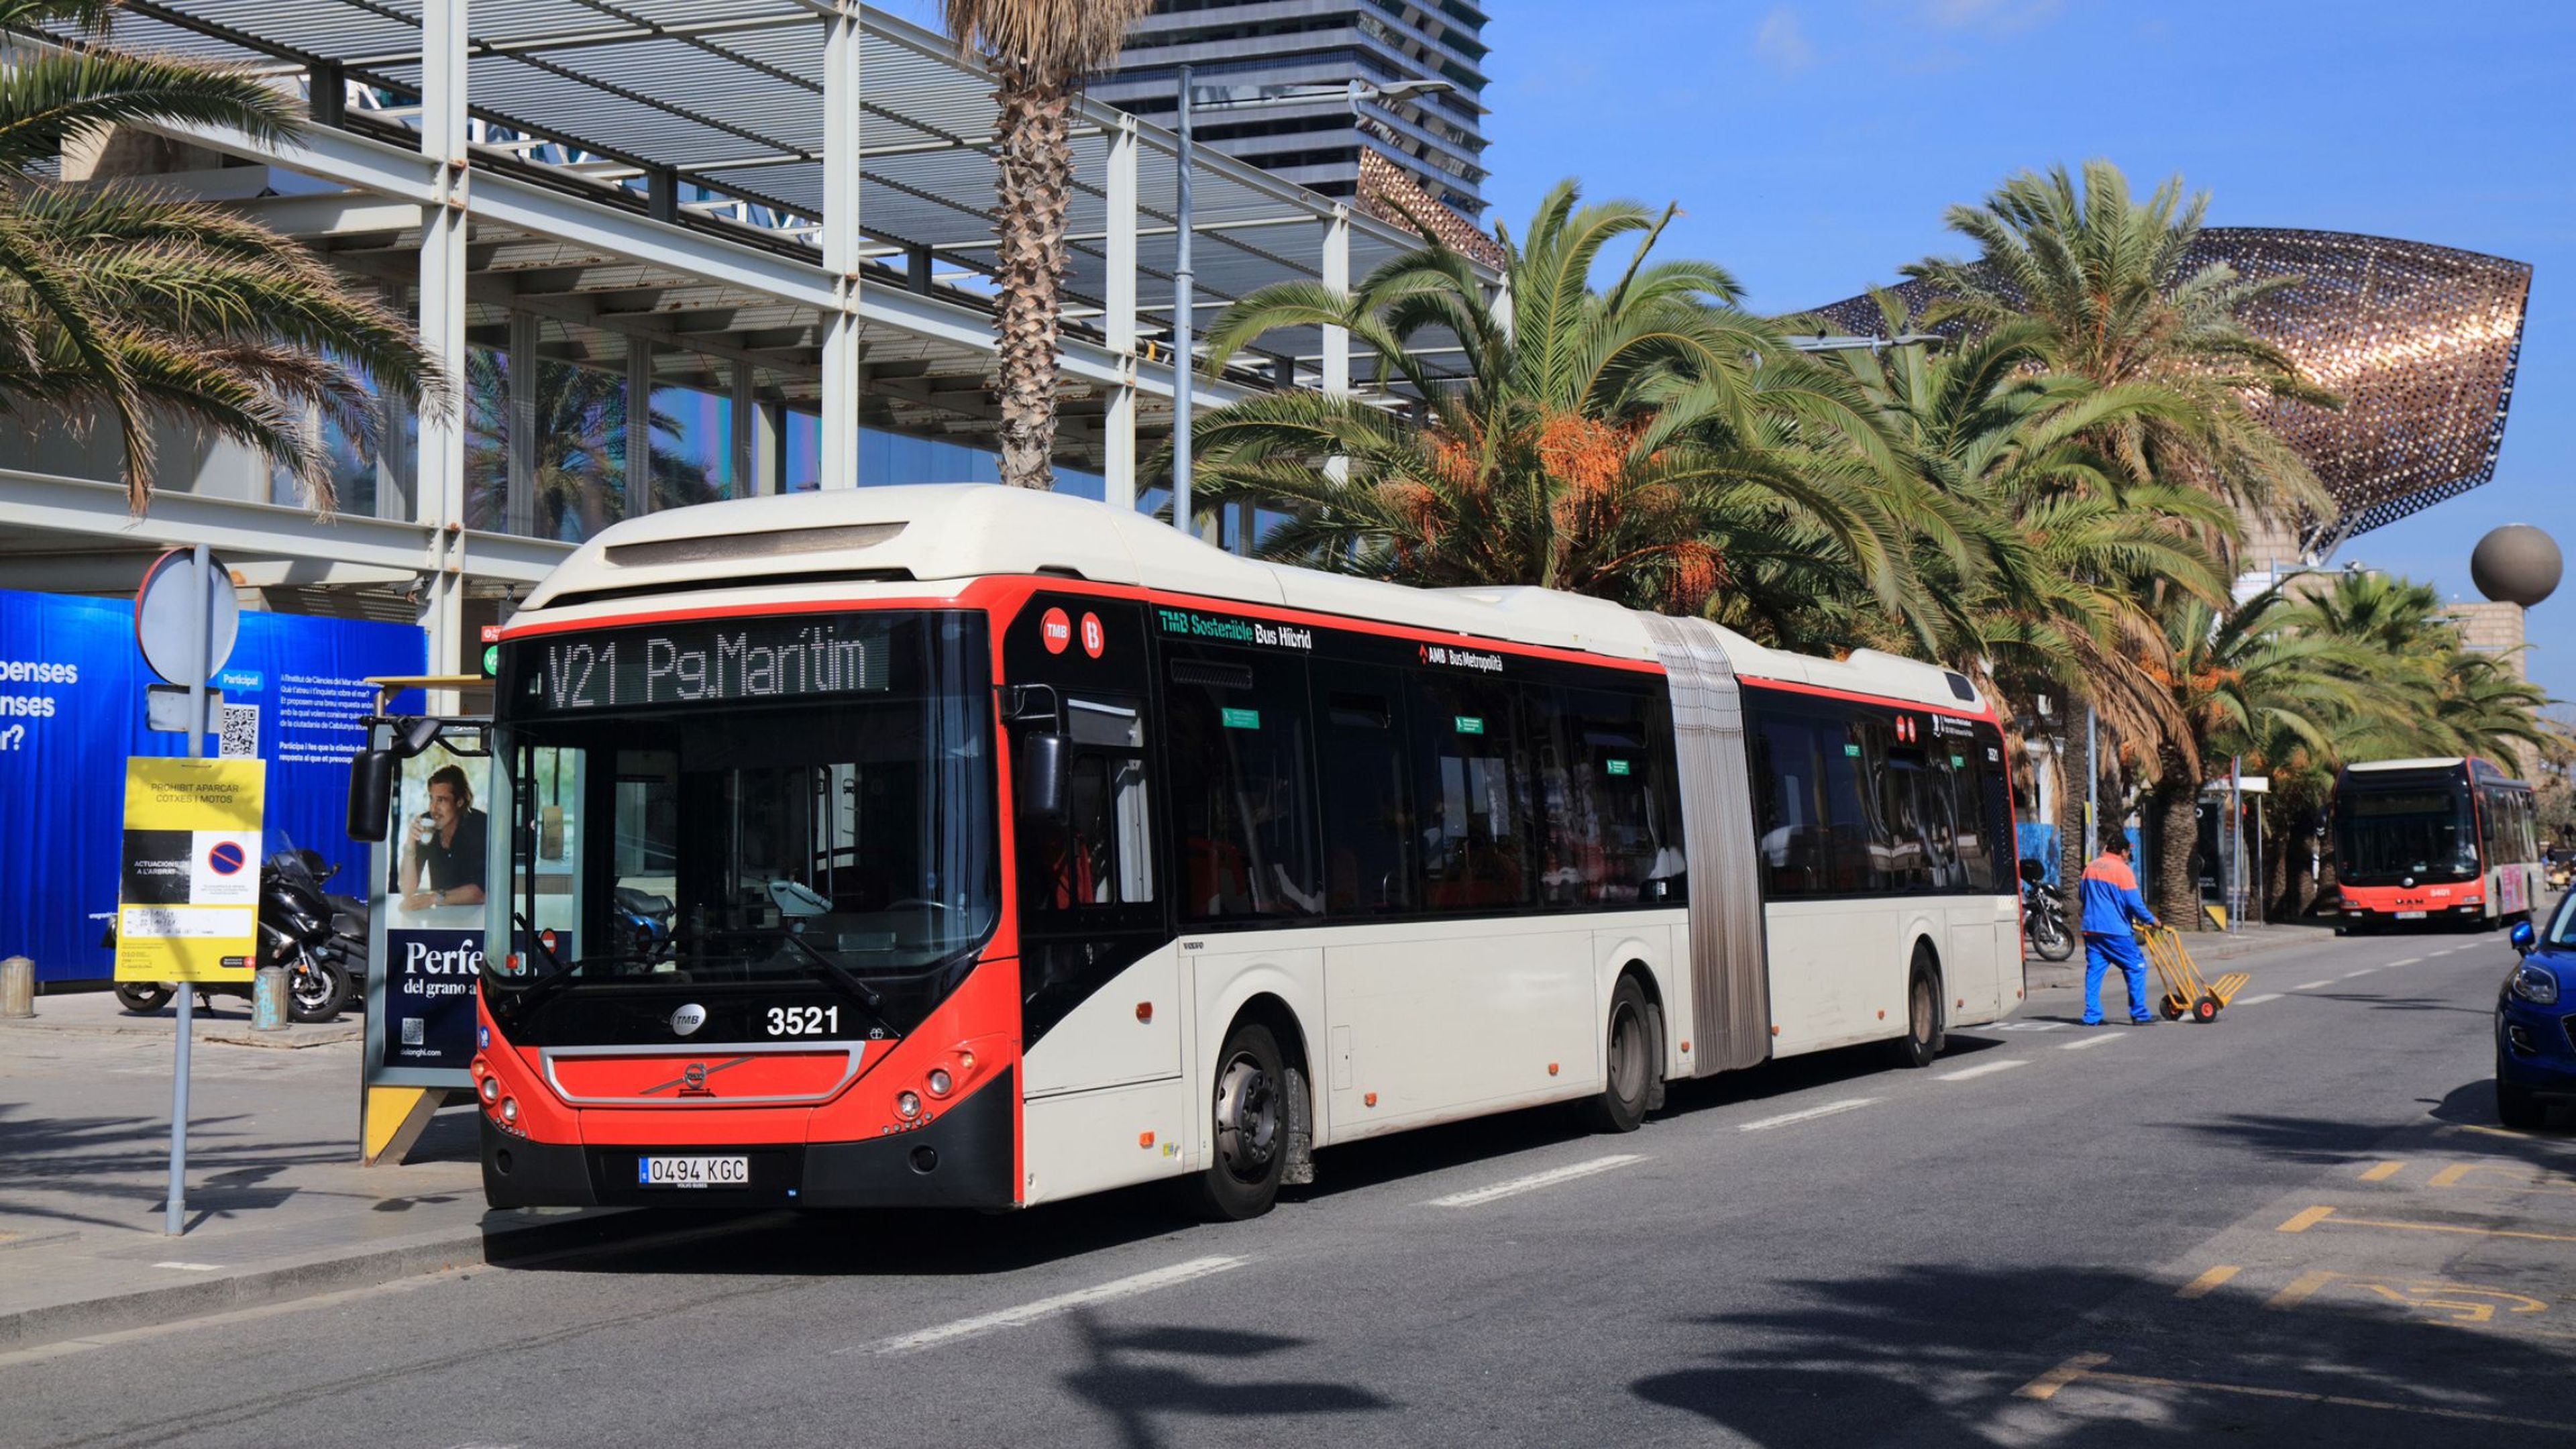 Barcelona declara la guerra al turismo: el Ayuntamiento elimina de Google Maps una línea de bus que lleva al Park Güell